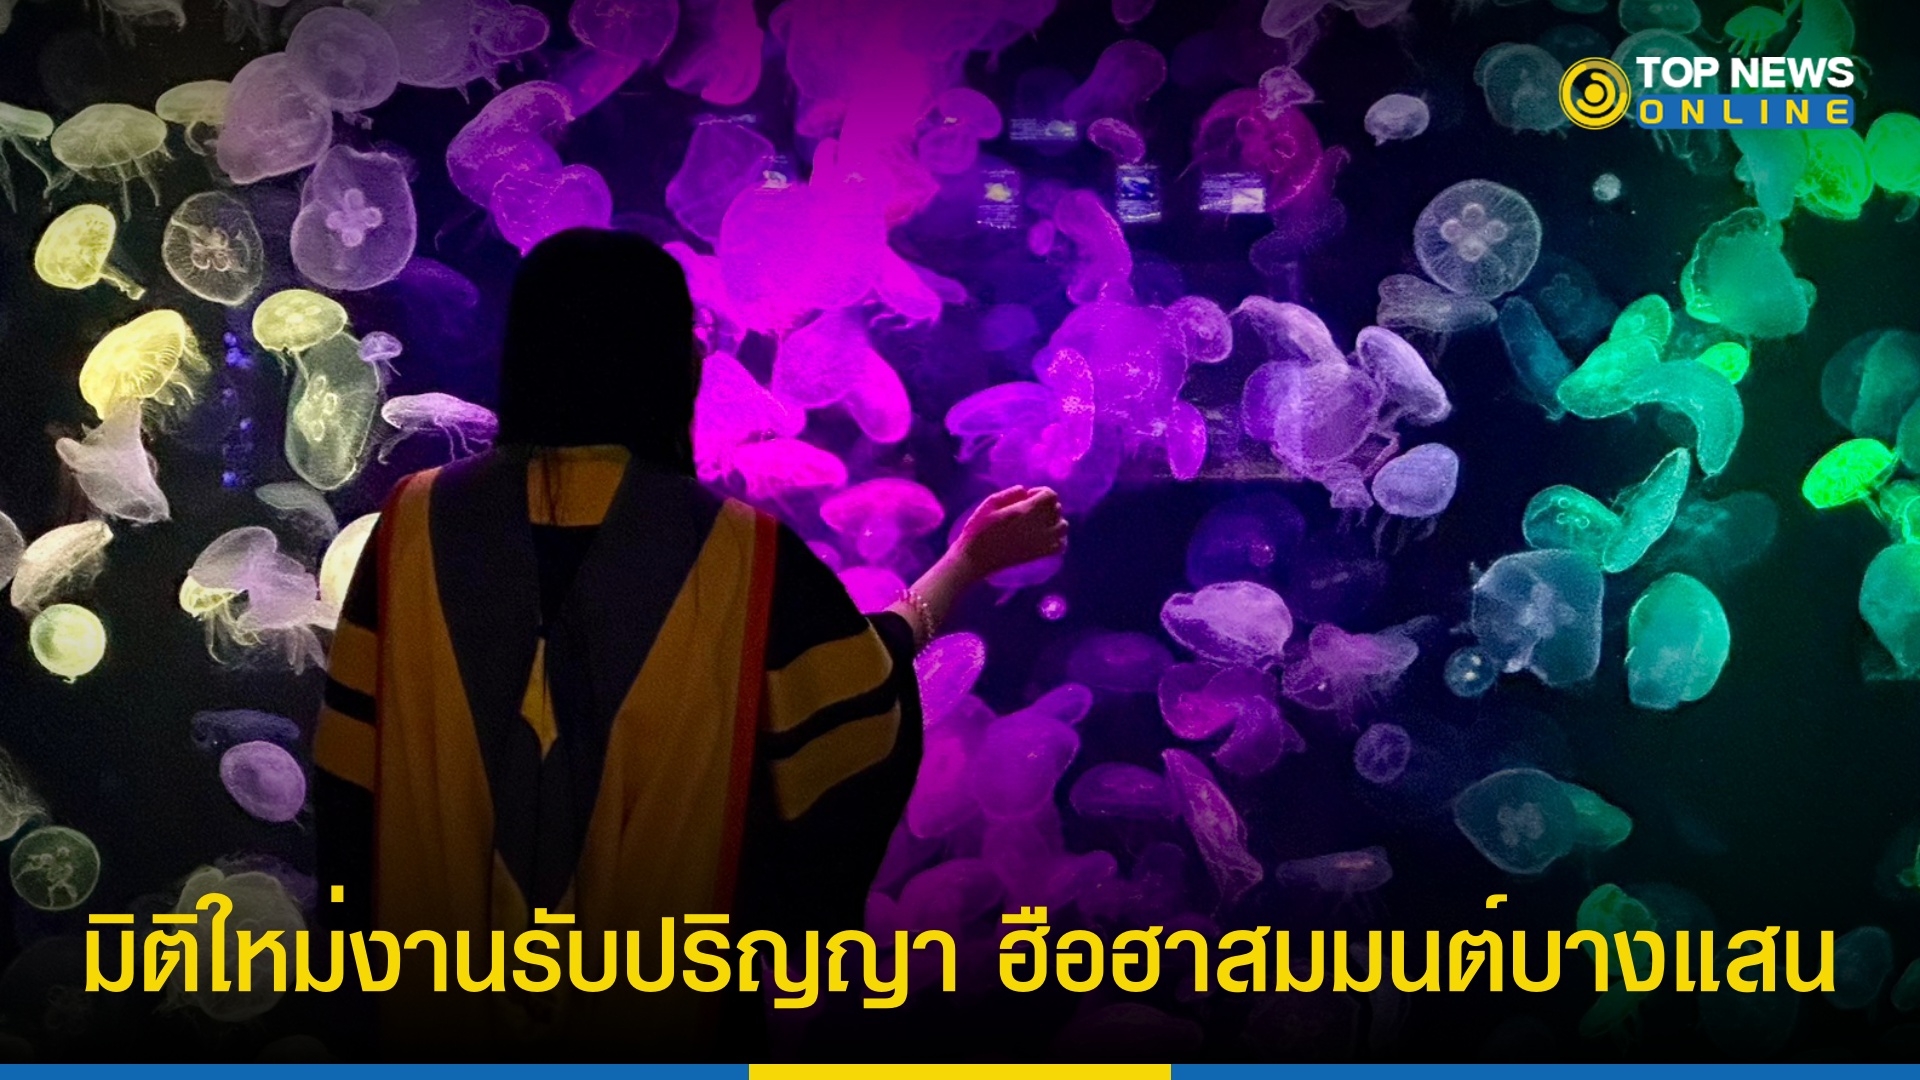 มิติใหม่แห่งการ “รับปริญญา” ม.บูรพา 2566 ฉีกกฎบัณฑิตเมืองไทย